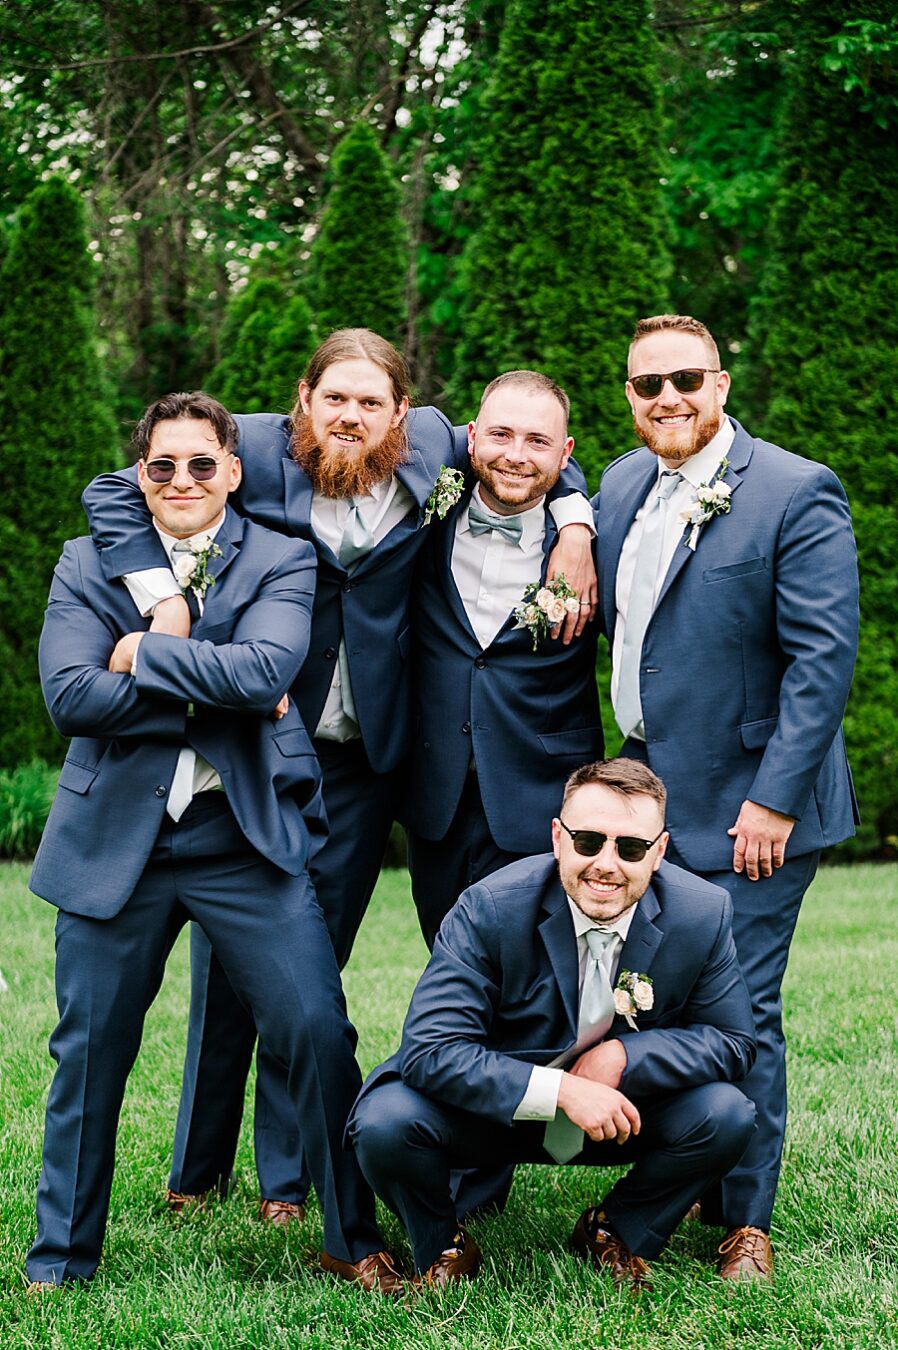 Groomsmen pose at Wedding by Amanda May Photos